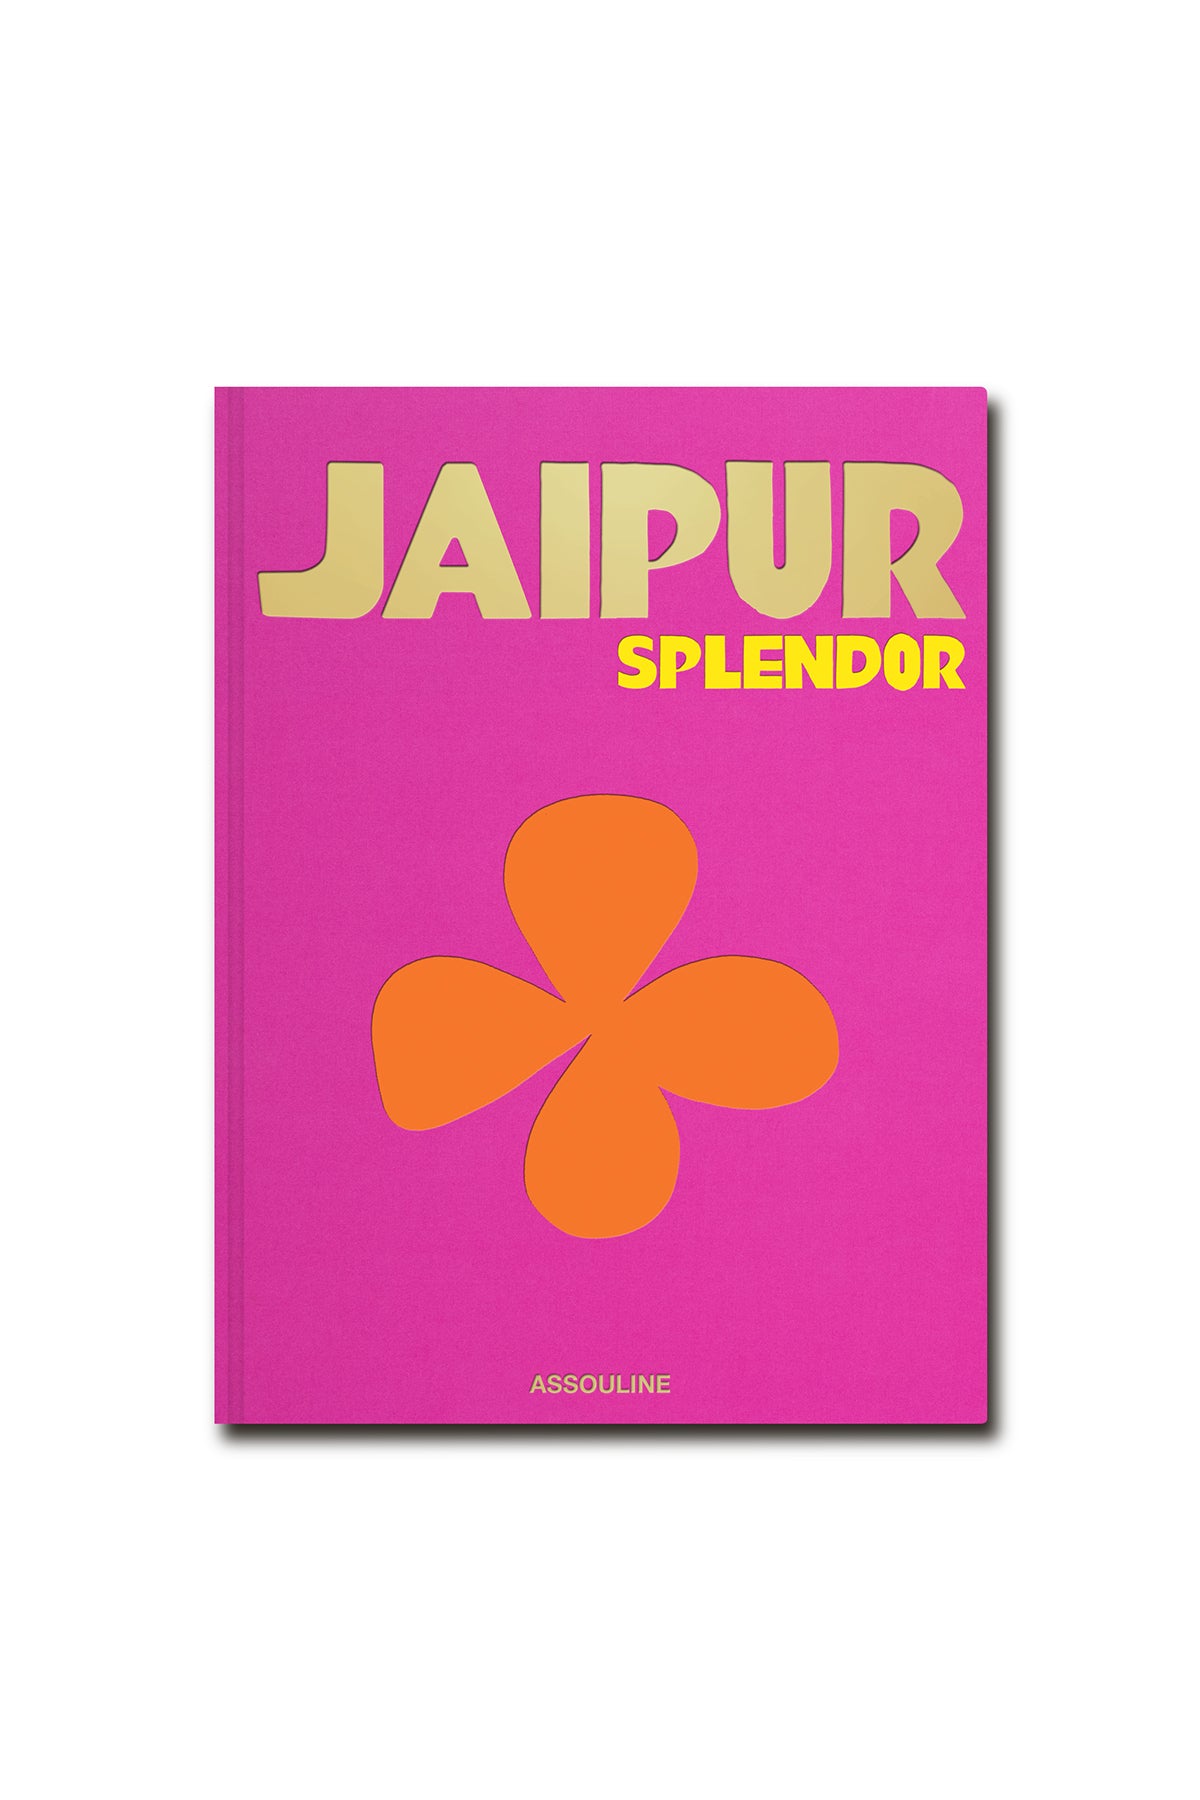 ASSOULINE | JAIPUR SPLENDOR